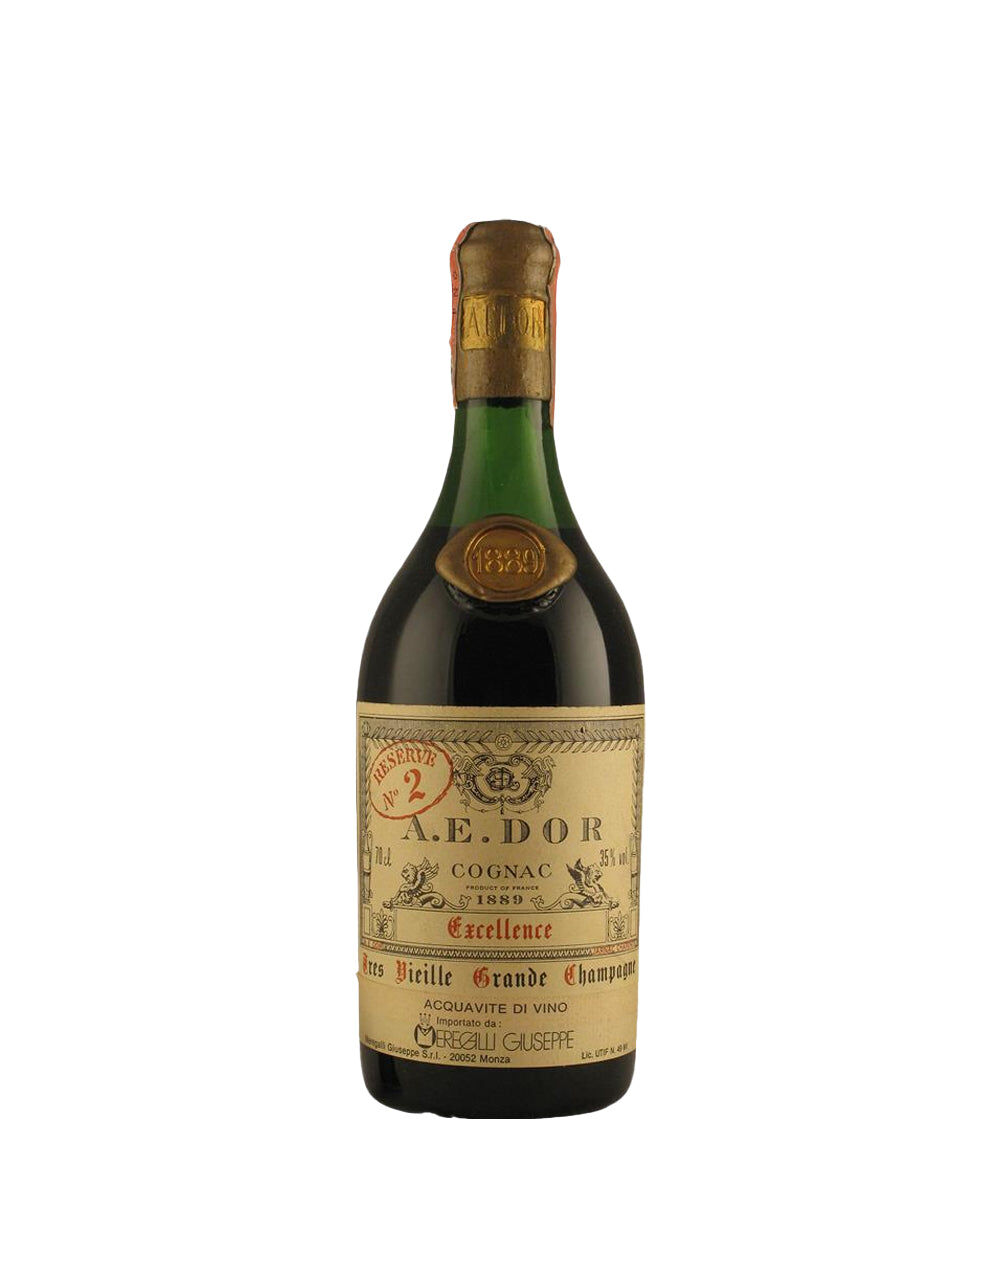 Cognac 1889 A.E. DOR No. 2 - Excellence, , main_image